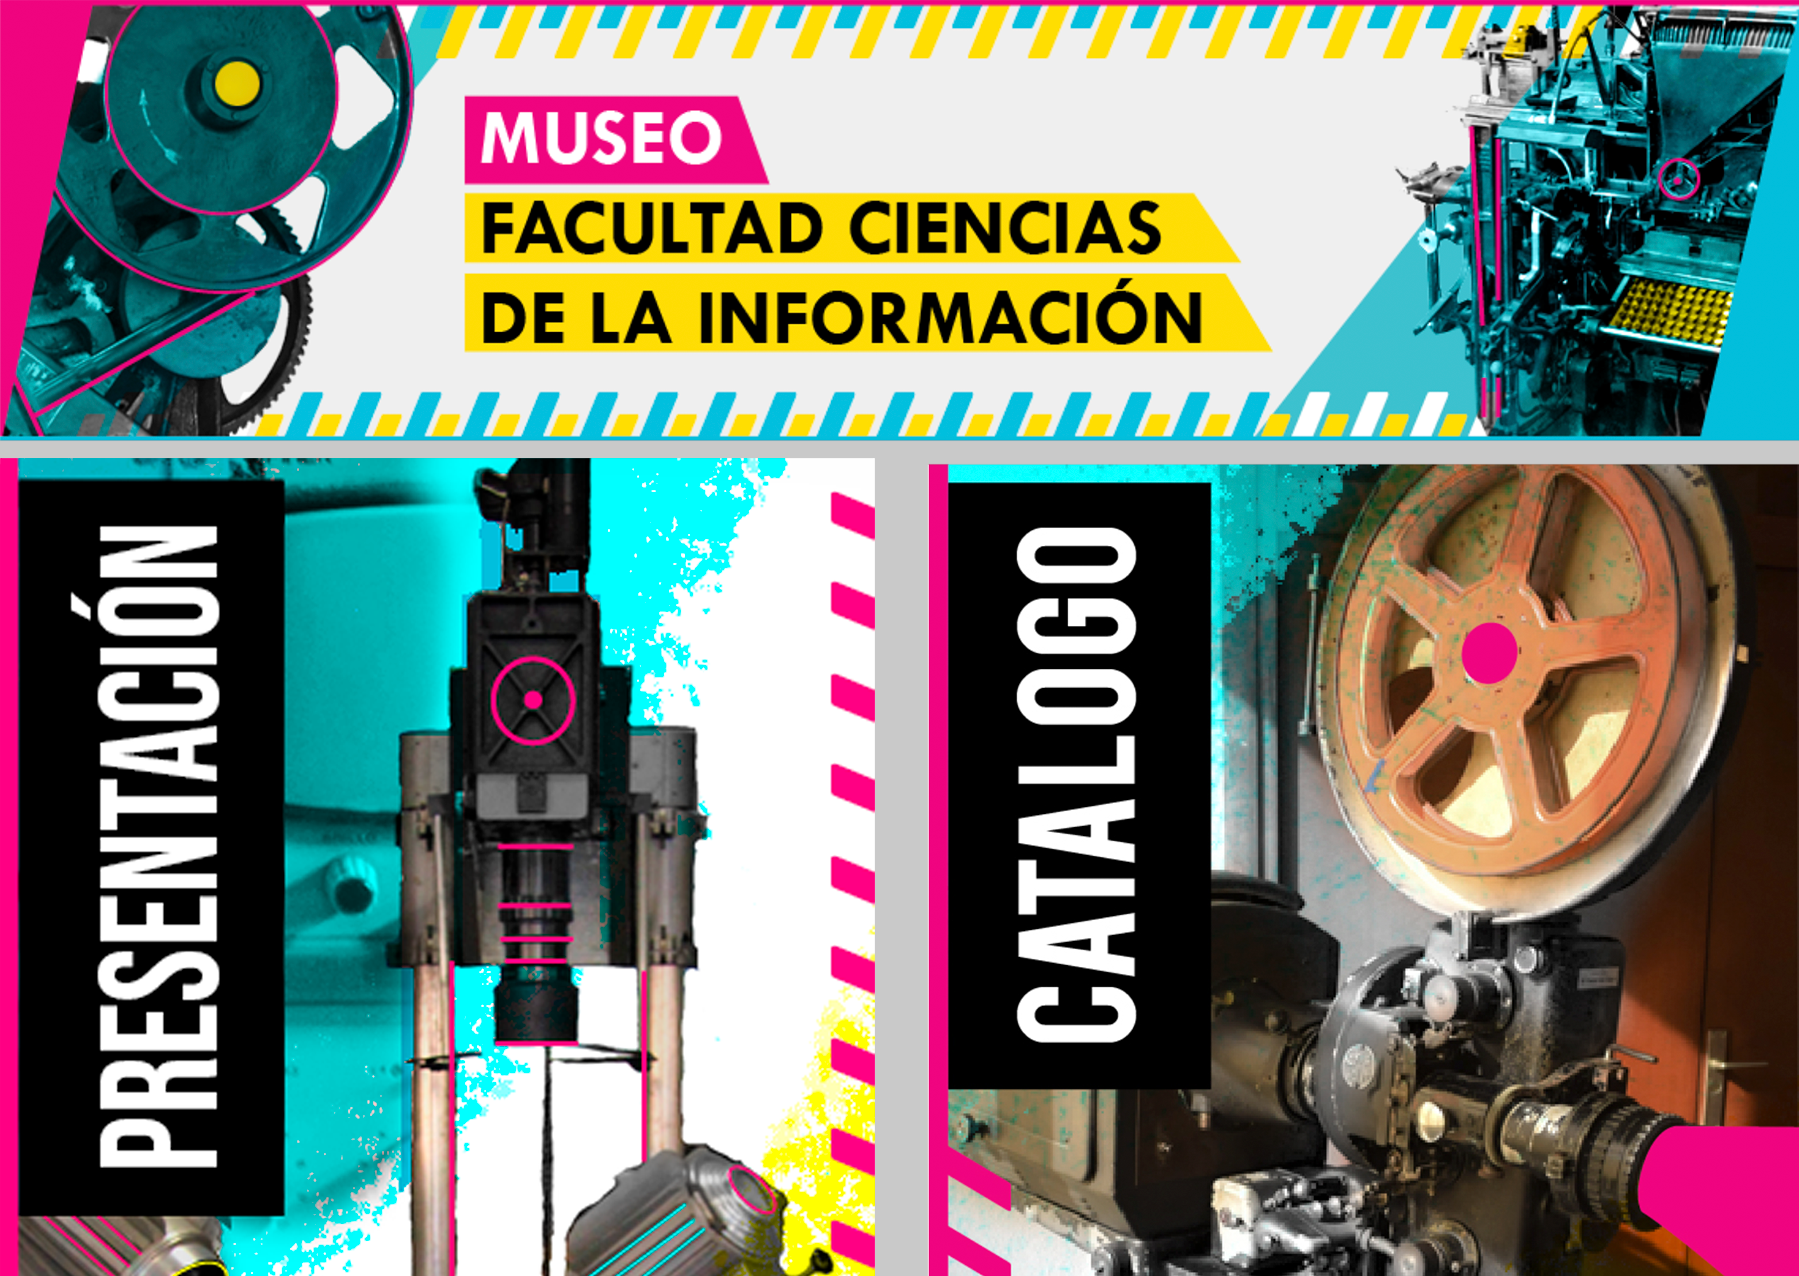 Se presenta el Museo de la Facultad de Ciencias de la Información con motivo del 50 aniversario